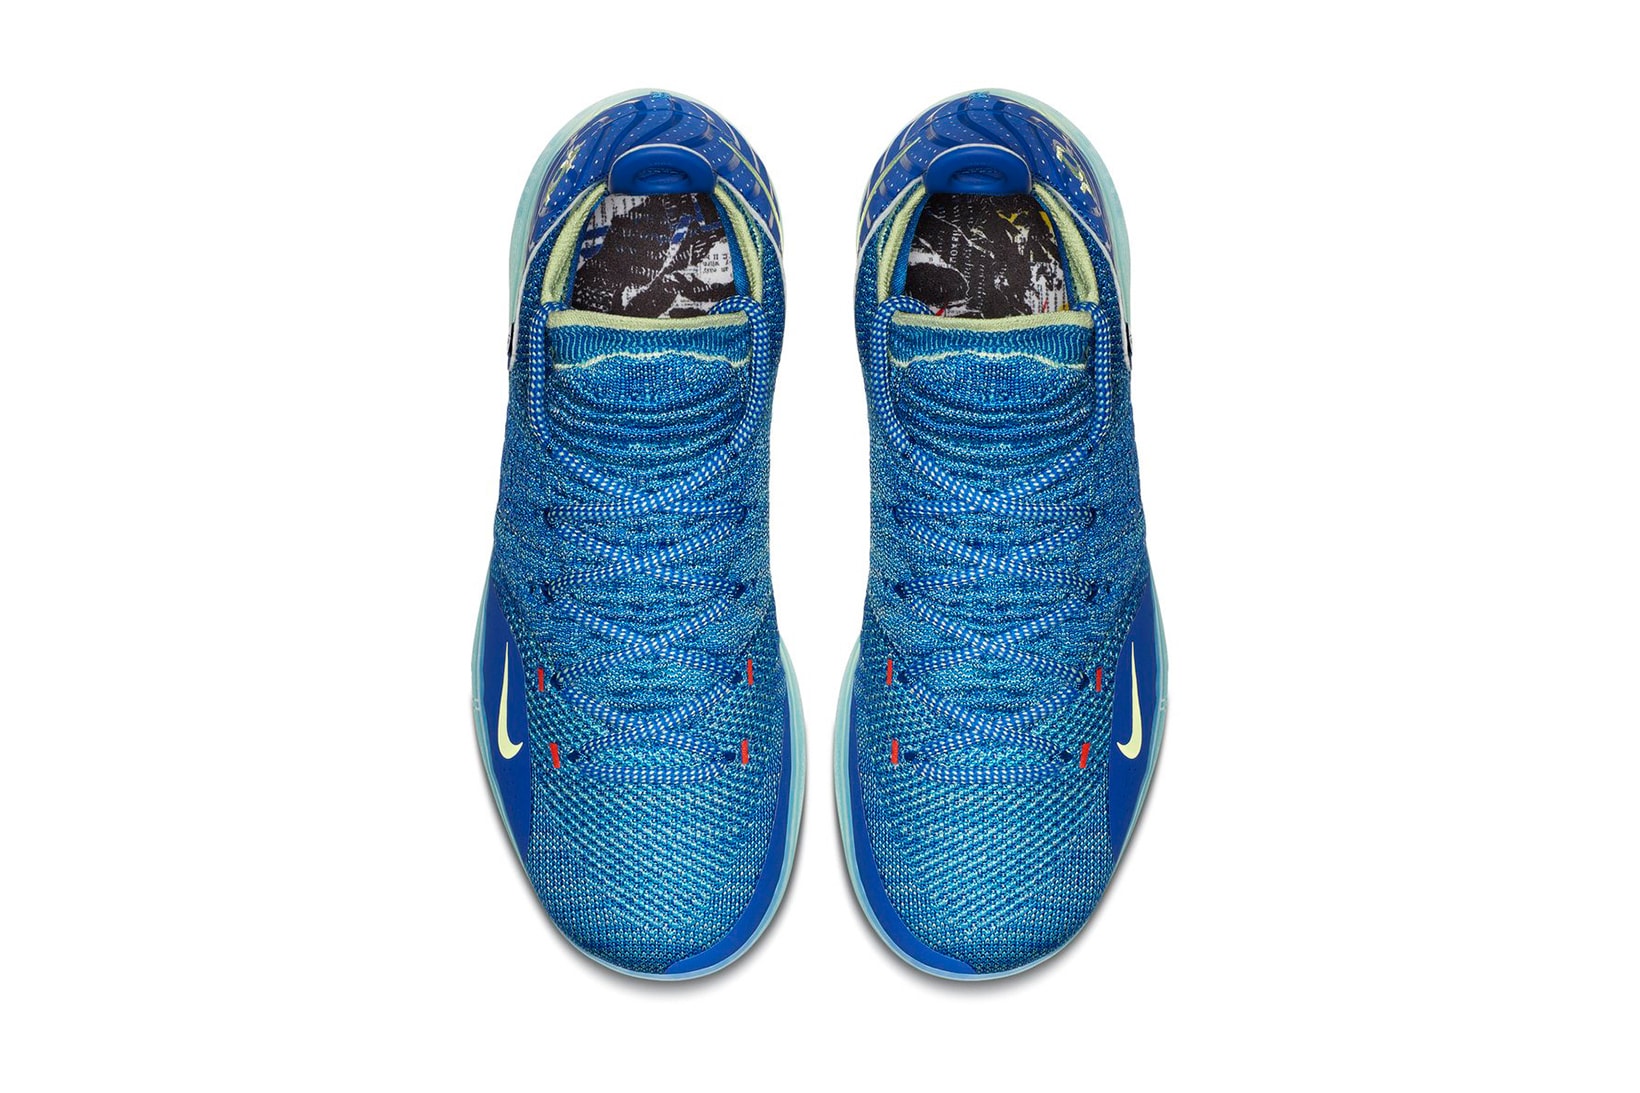 Nike KD 11 First Look Kevin Durant shoe sneaker june 2018 release date info drop